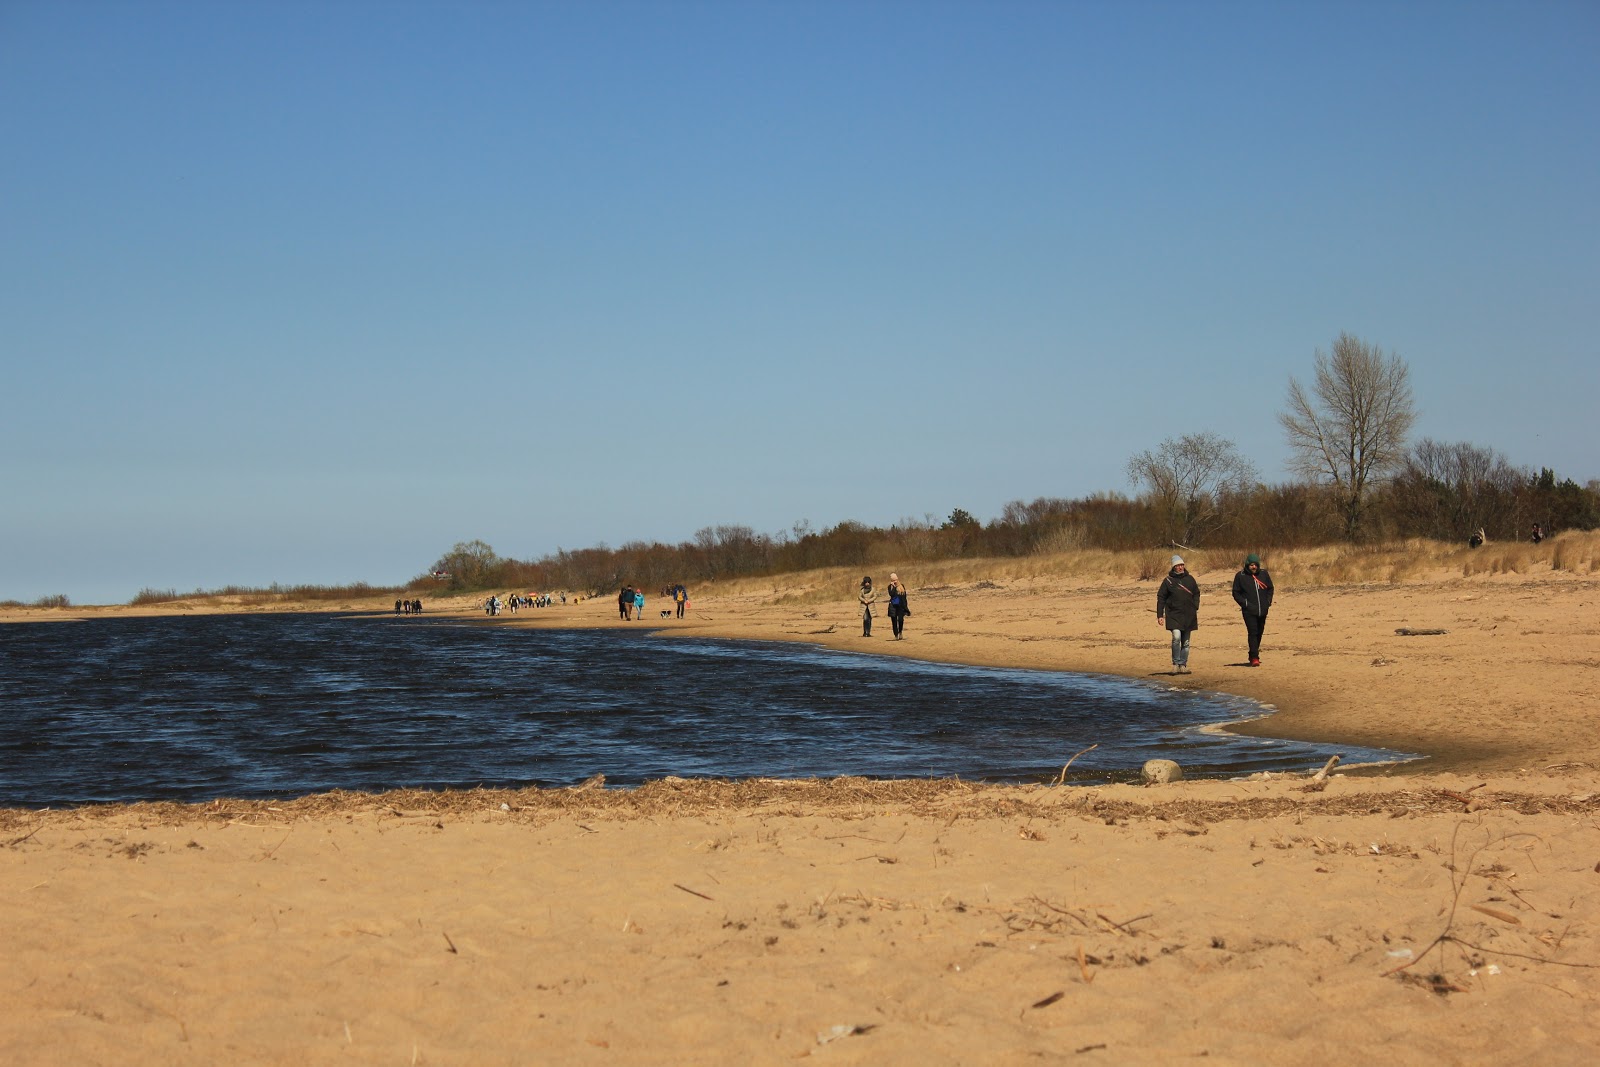 Fotografija Vitsula beach Gdansk nahaja se v naravnem okolju